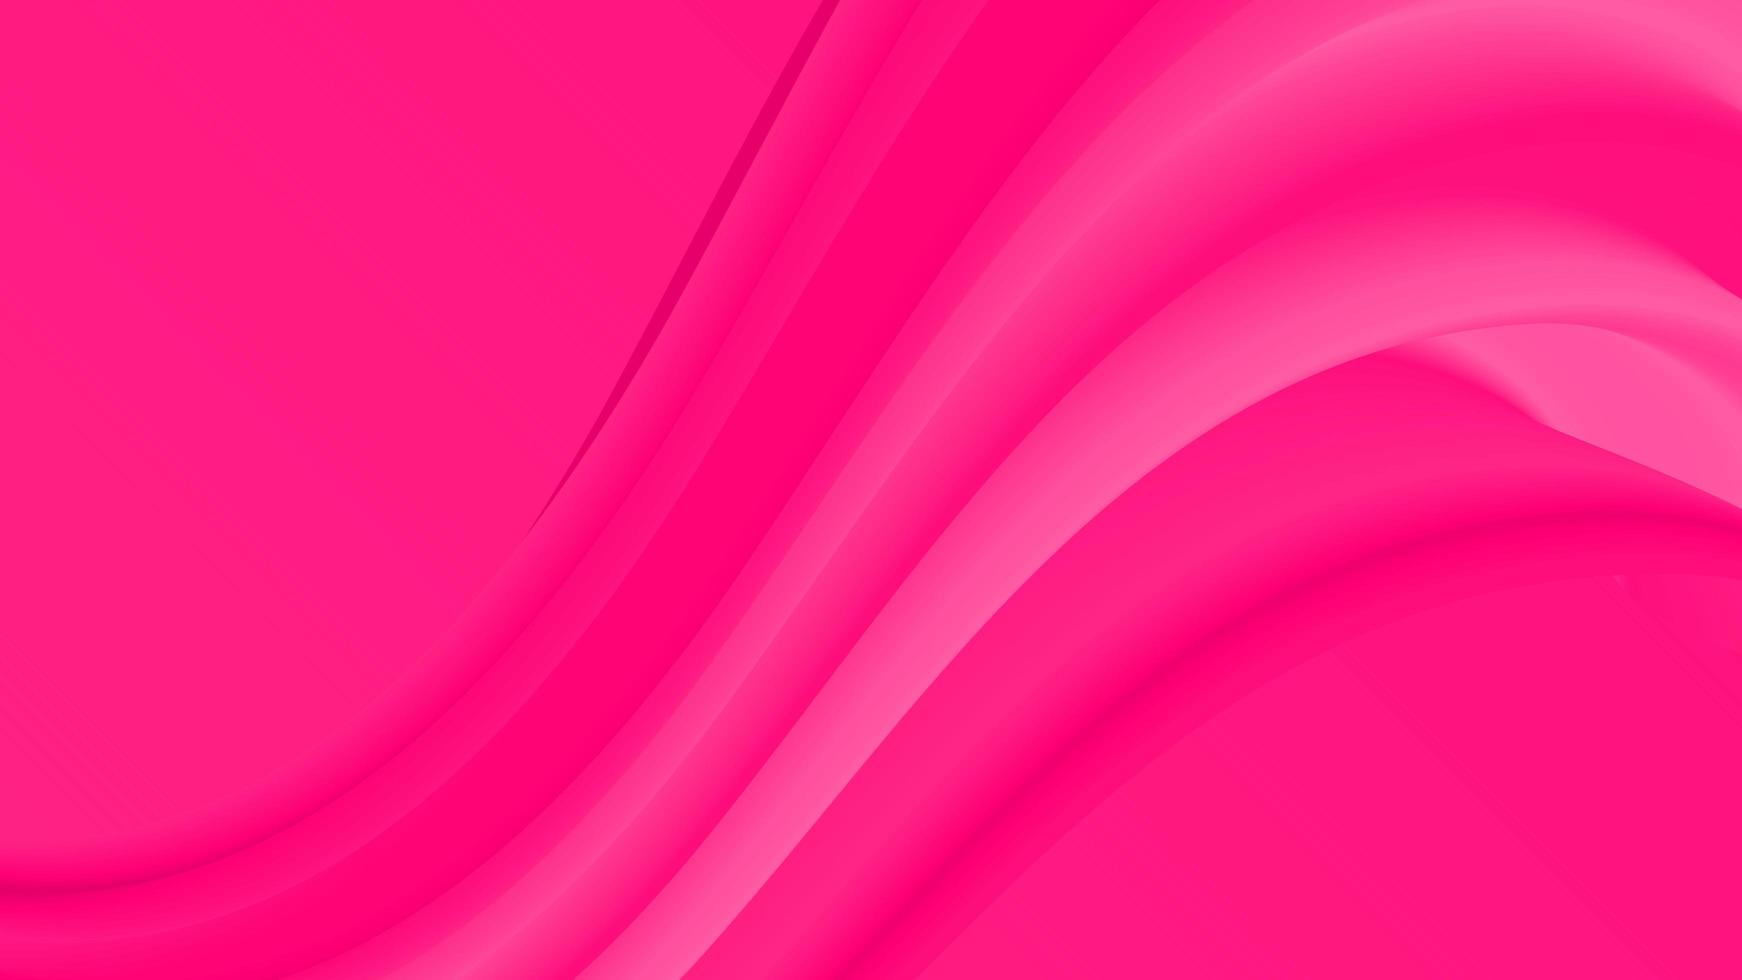 la conception de fond abstrait utilise un motif de vague rose et a une impression douce et féminine photo